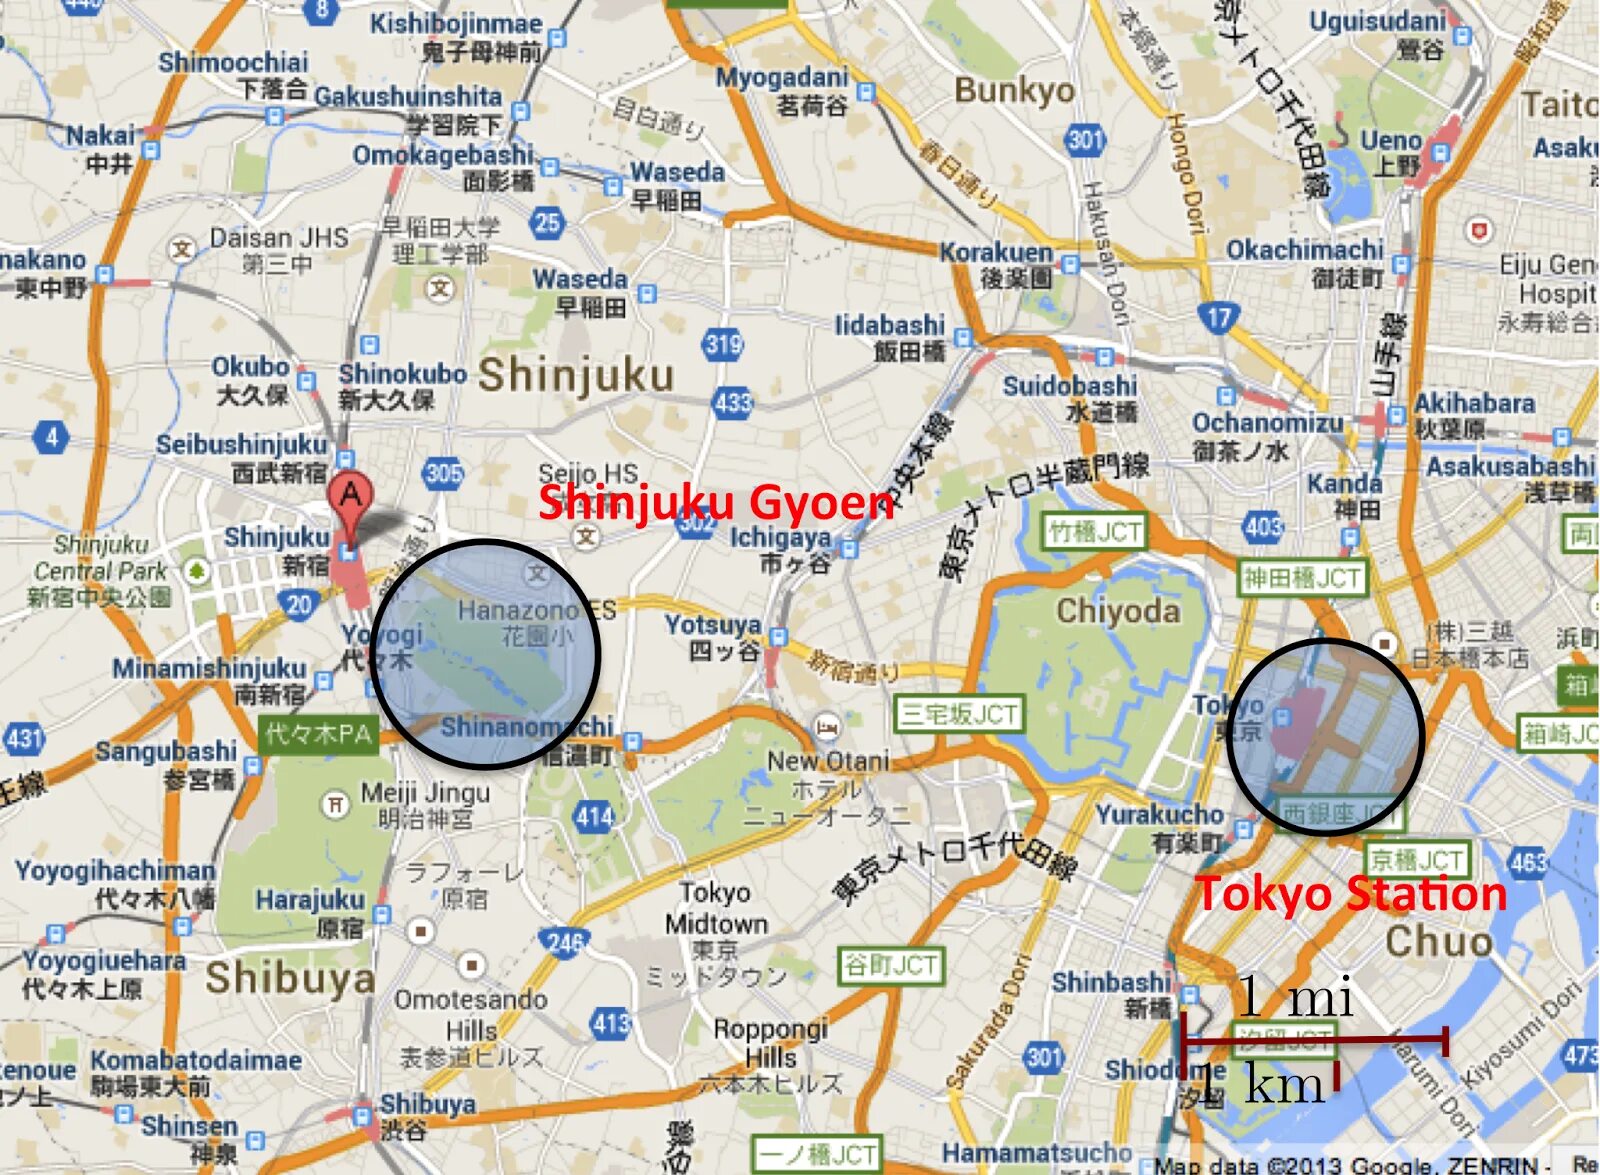 Как получить карту токио. Роппонги на карте Токио. Район Минато Токио карта. Роппонги Токио карта карта. Карта Токио улицы.